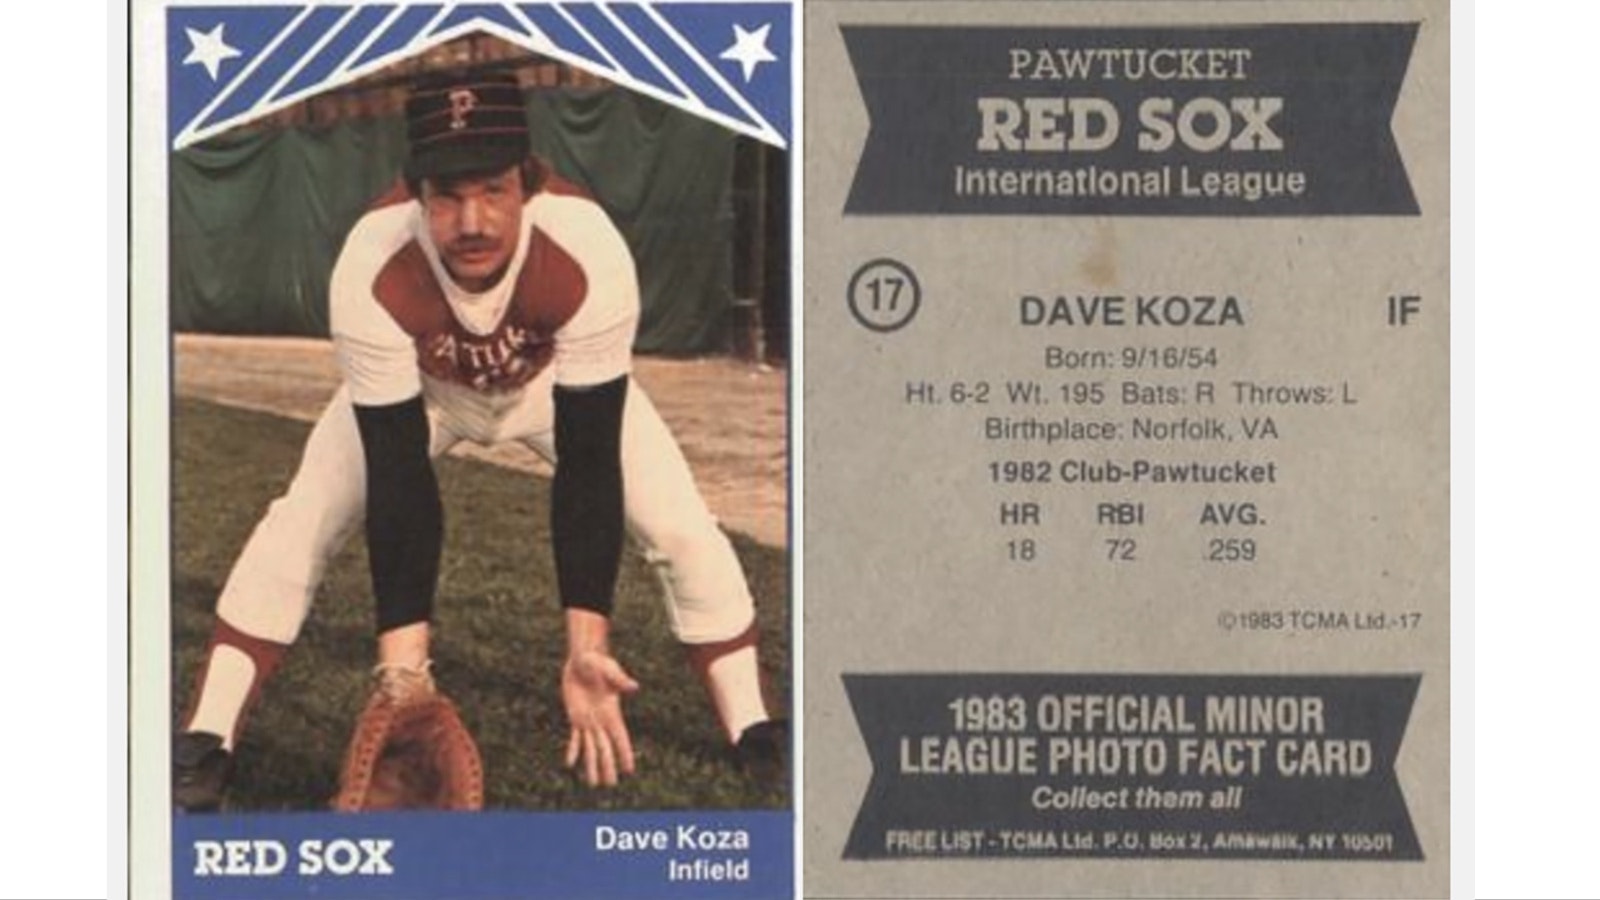 Dave Koza's 1983 baseball card.